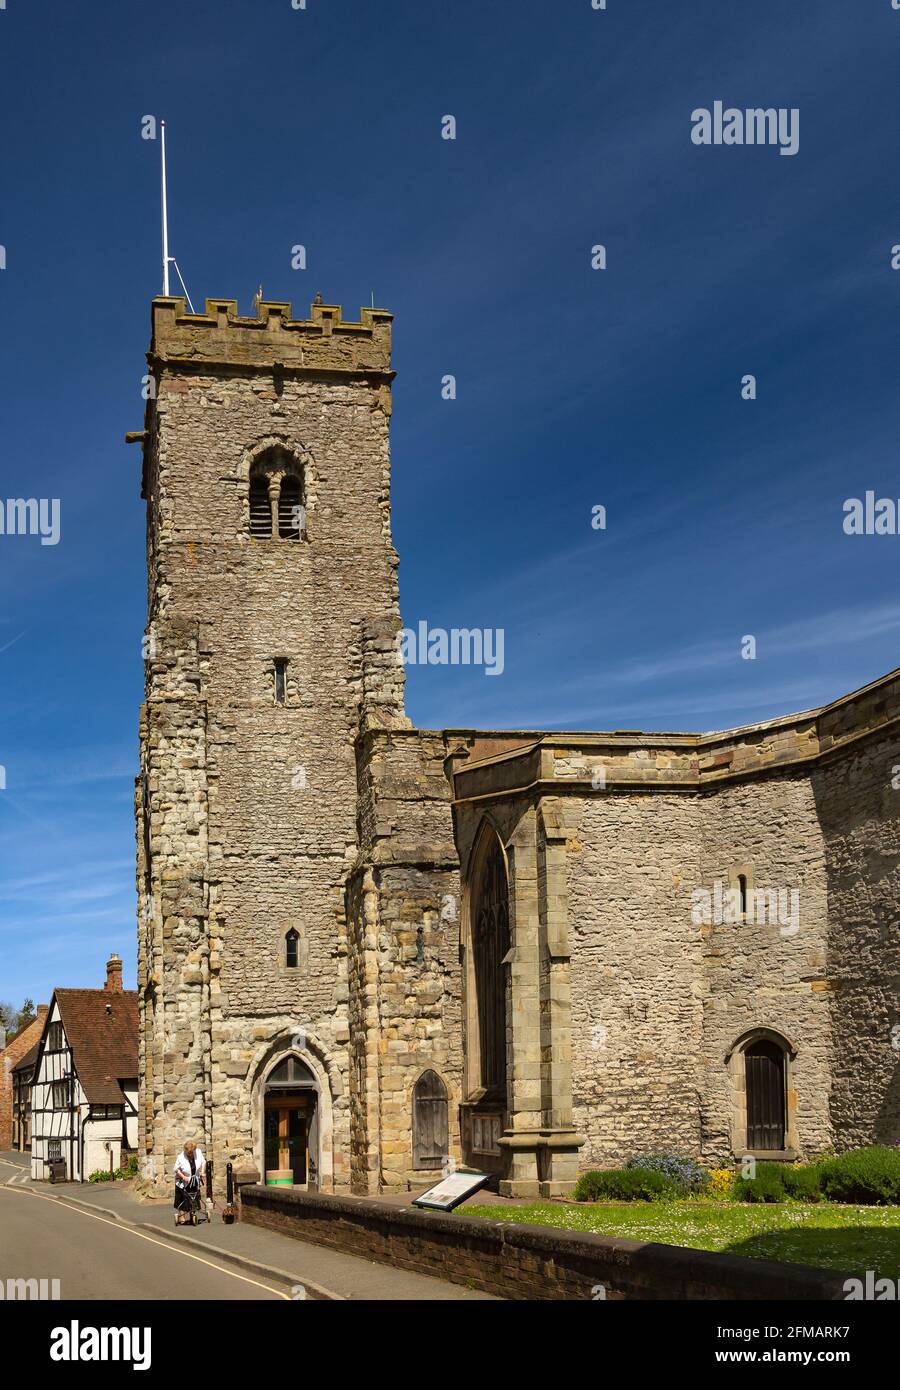 Much Wenlock, mit einer Bevölkerung von rund 3,000 Einwohnern, ist eine mittelalterliche Stadt und Gemeinde in Shropshire, England. Stockfoto